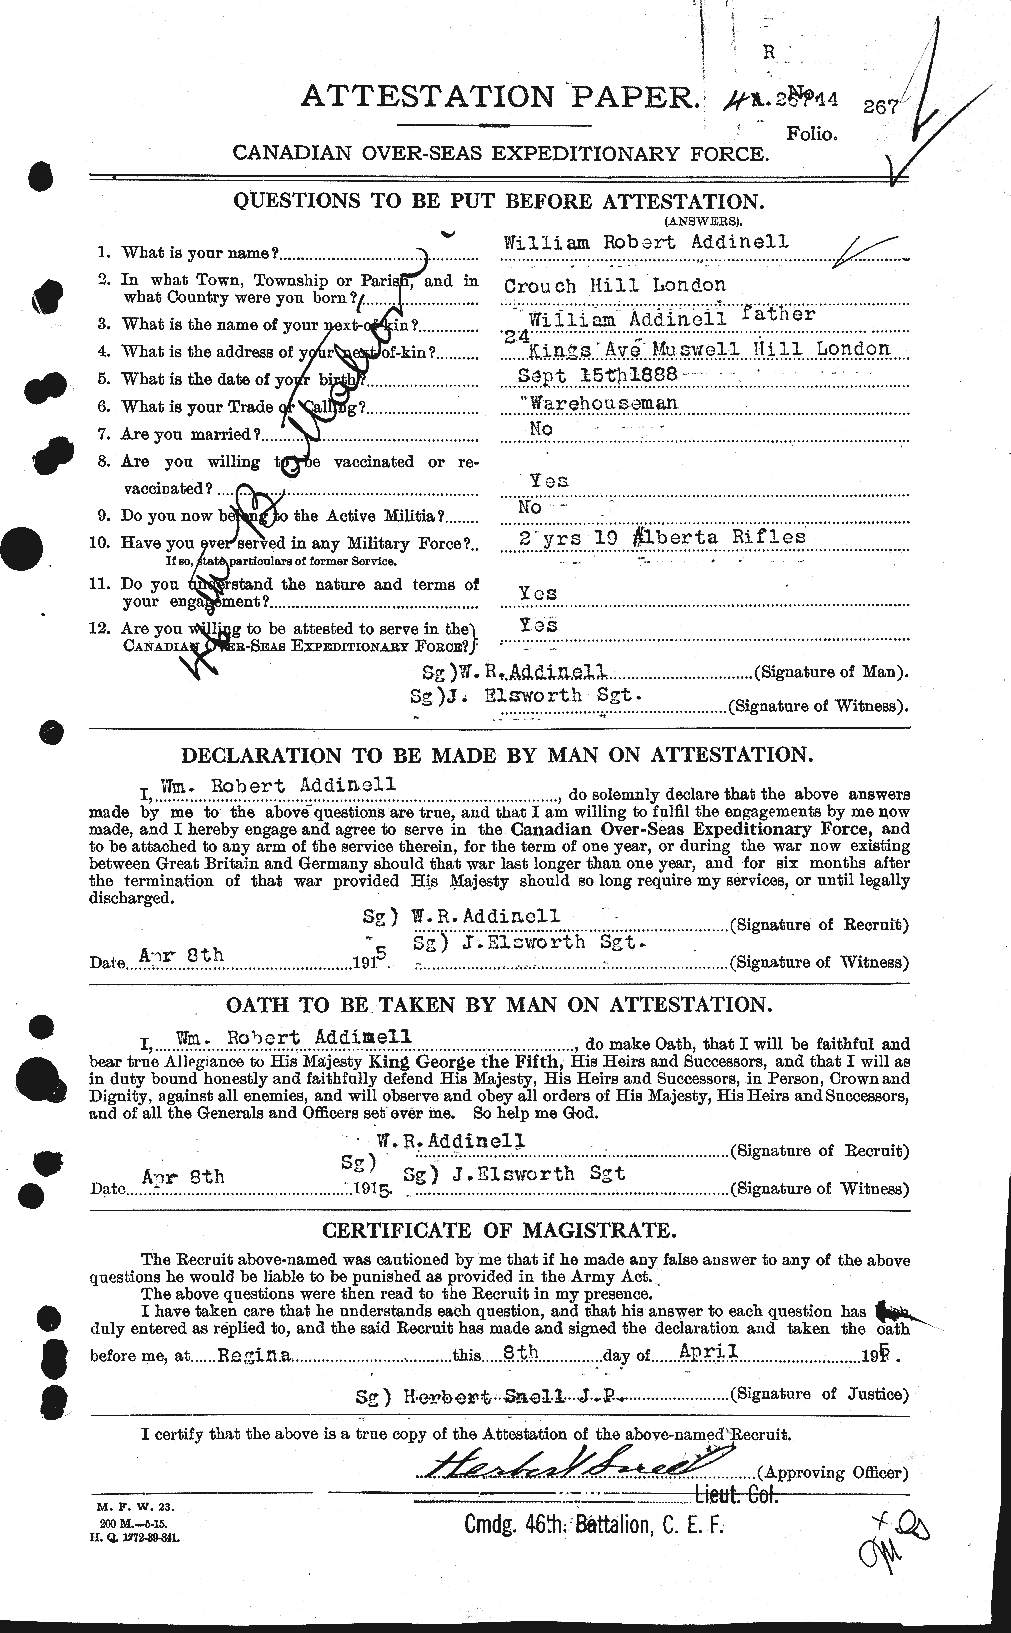 Dossiers du Personnel de la Première Guerre mondiale - CEC 202462a